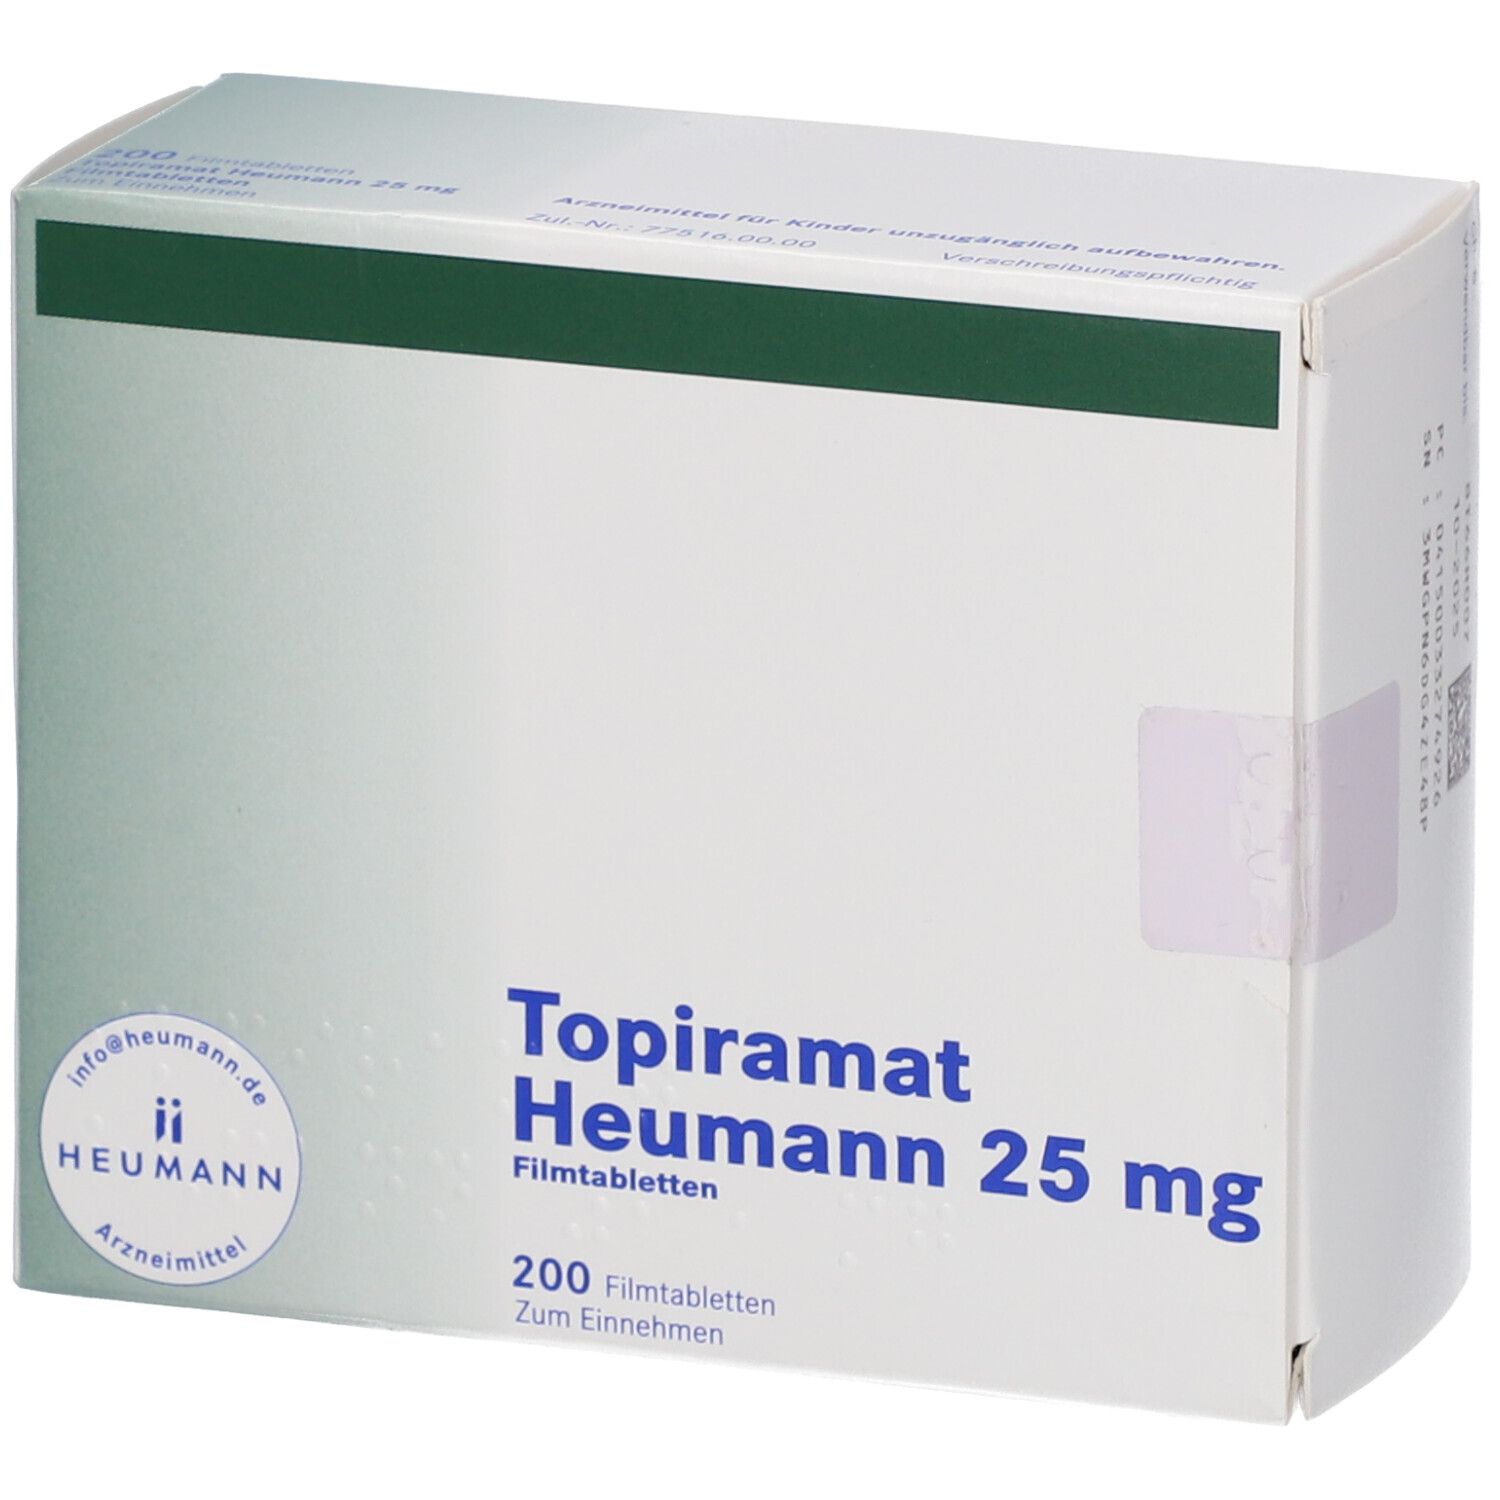 Topiramat Heumann 25 mg